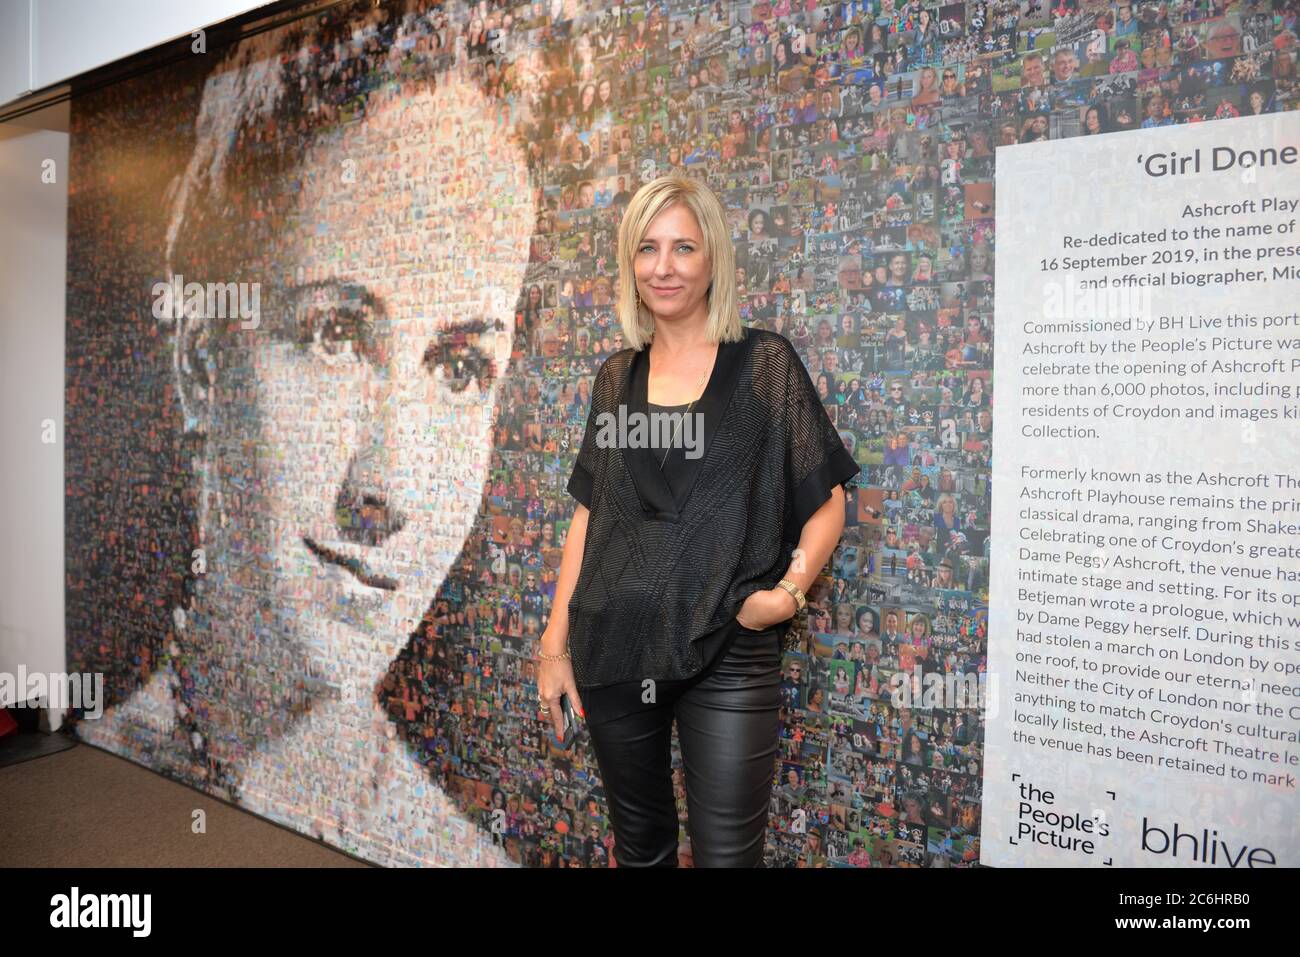 Helen Marshall, creatore del murale di 6,000 foto di residenti di croydon alla riapertura della Ashcroft Playhouse, Fairfield Halls, Croydon ON Foto Stock